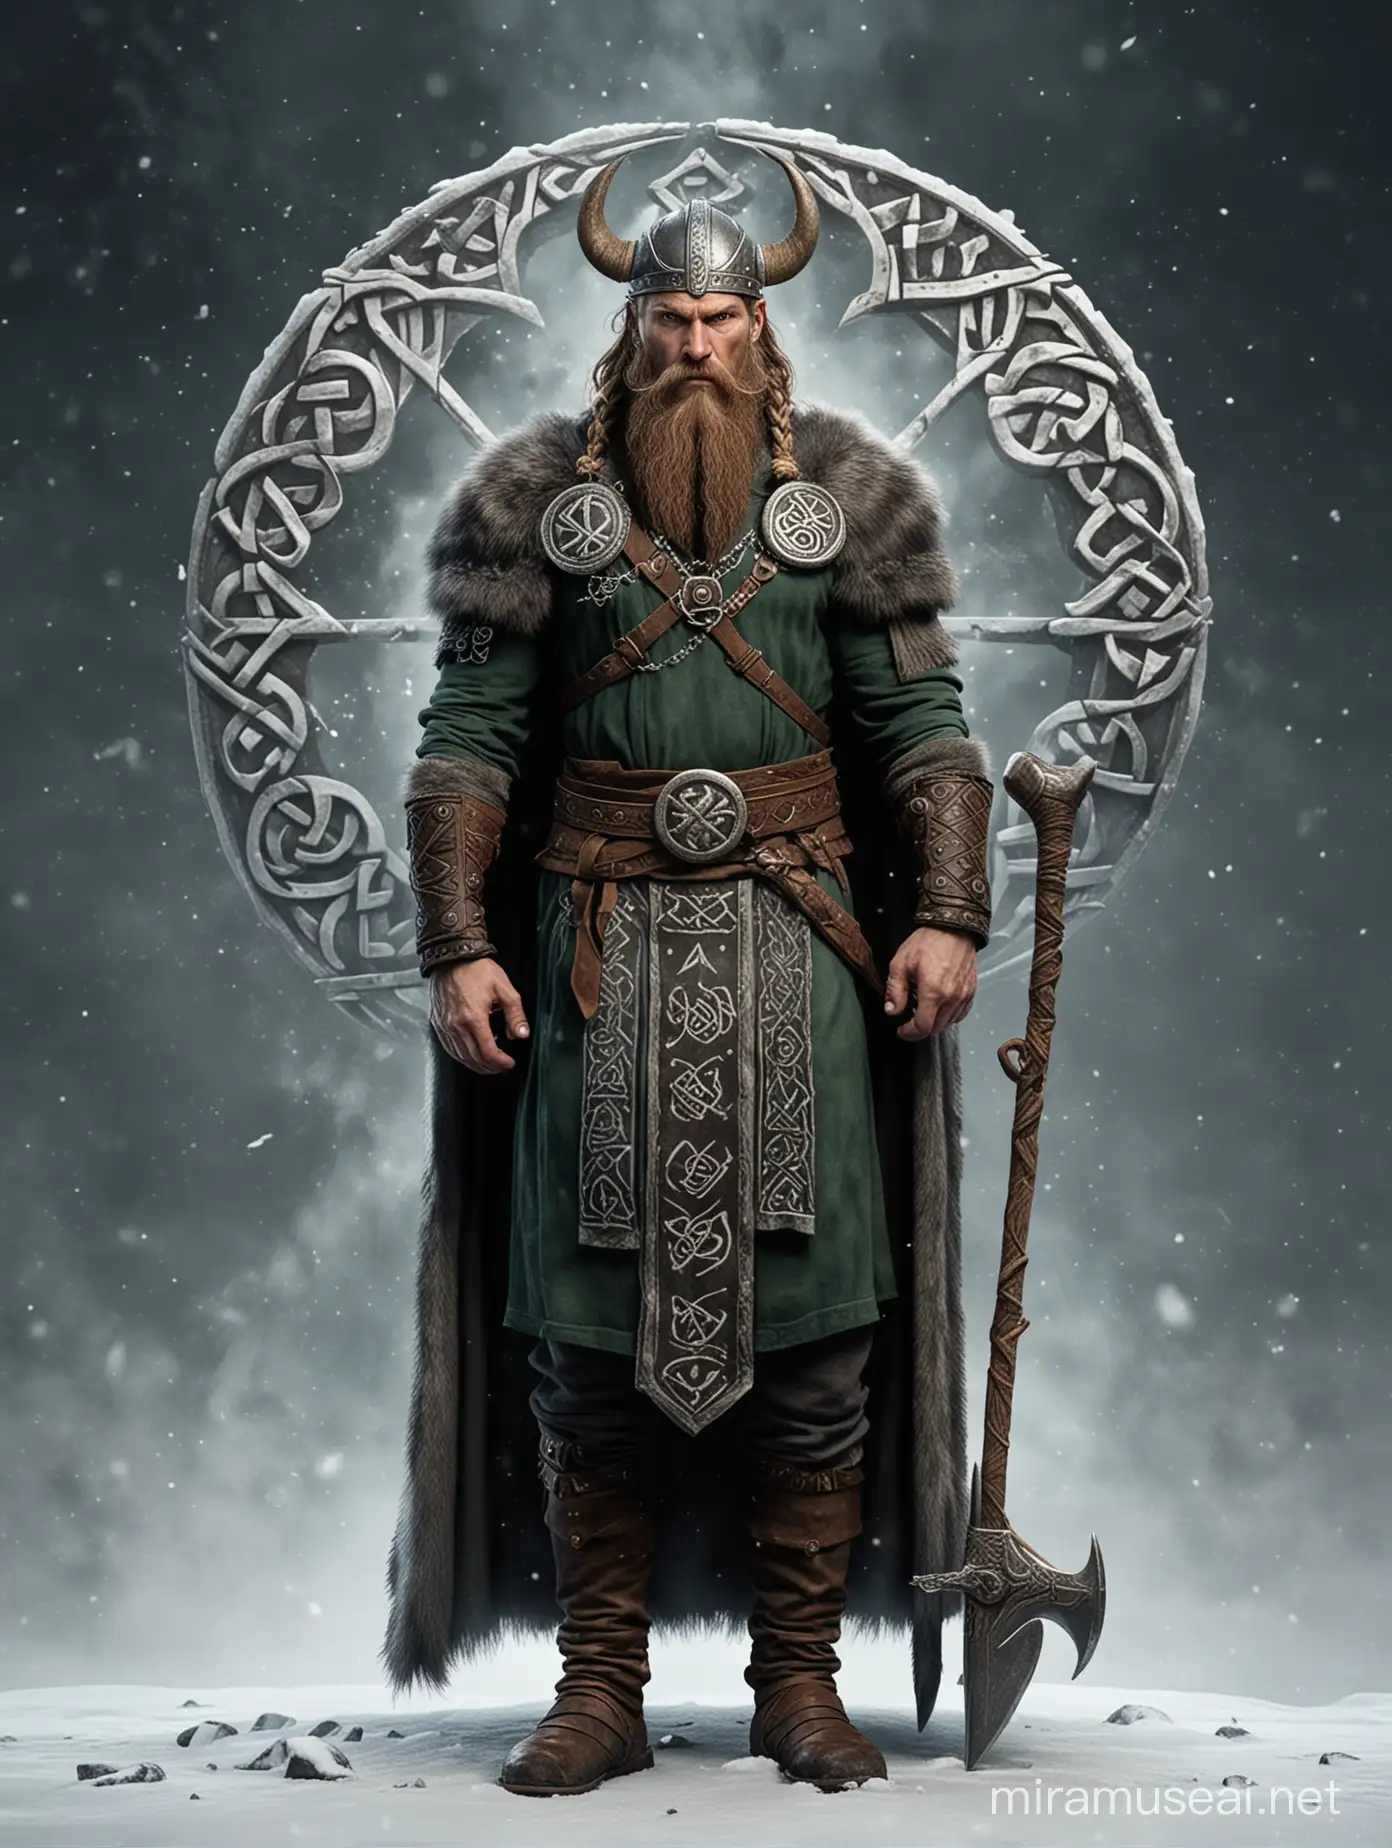 Viking God Balder in Winter Landscape with Rune and Celtic Symbols